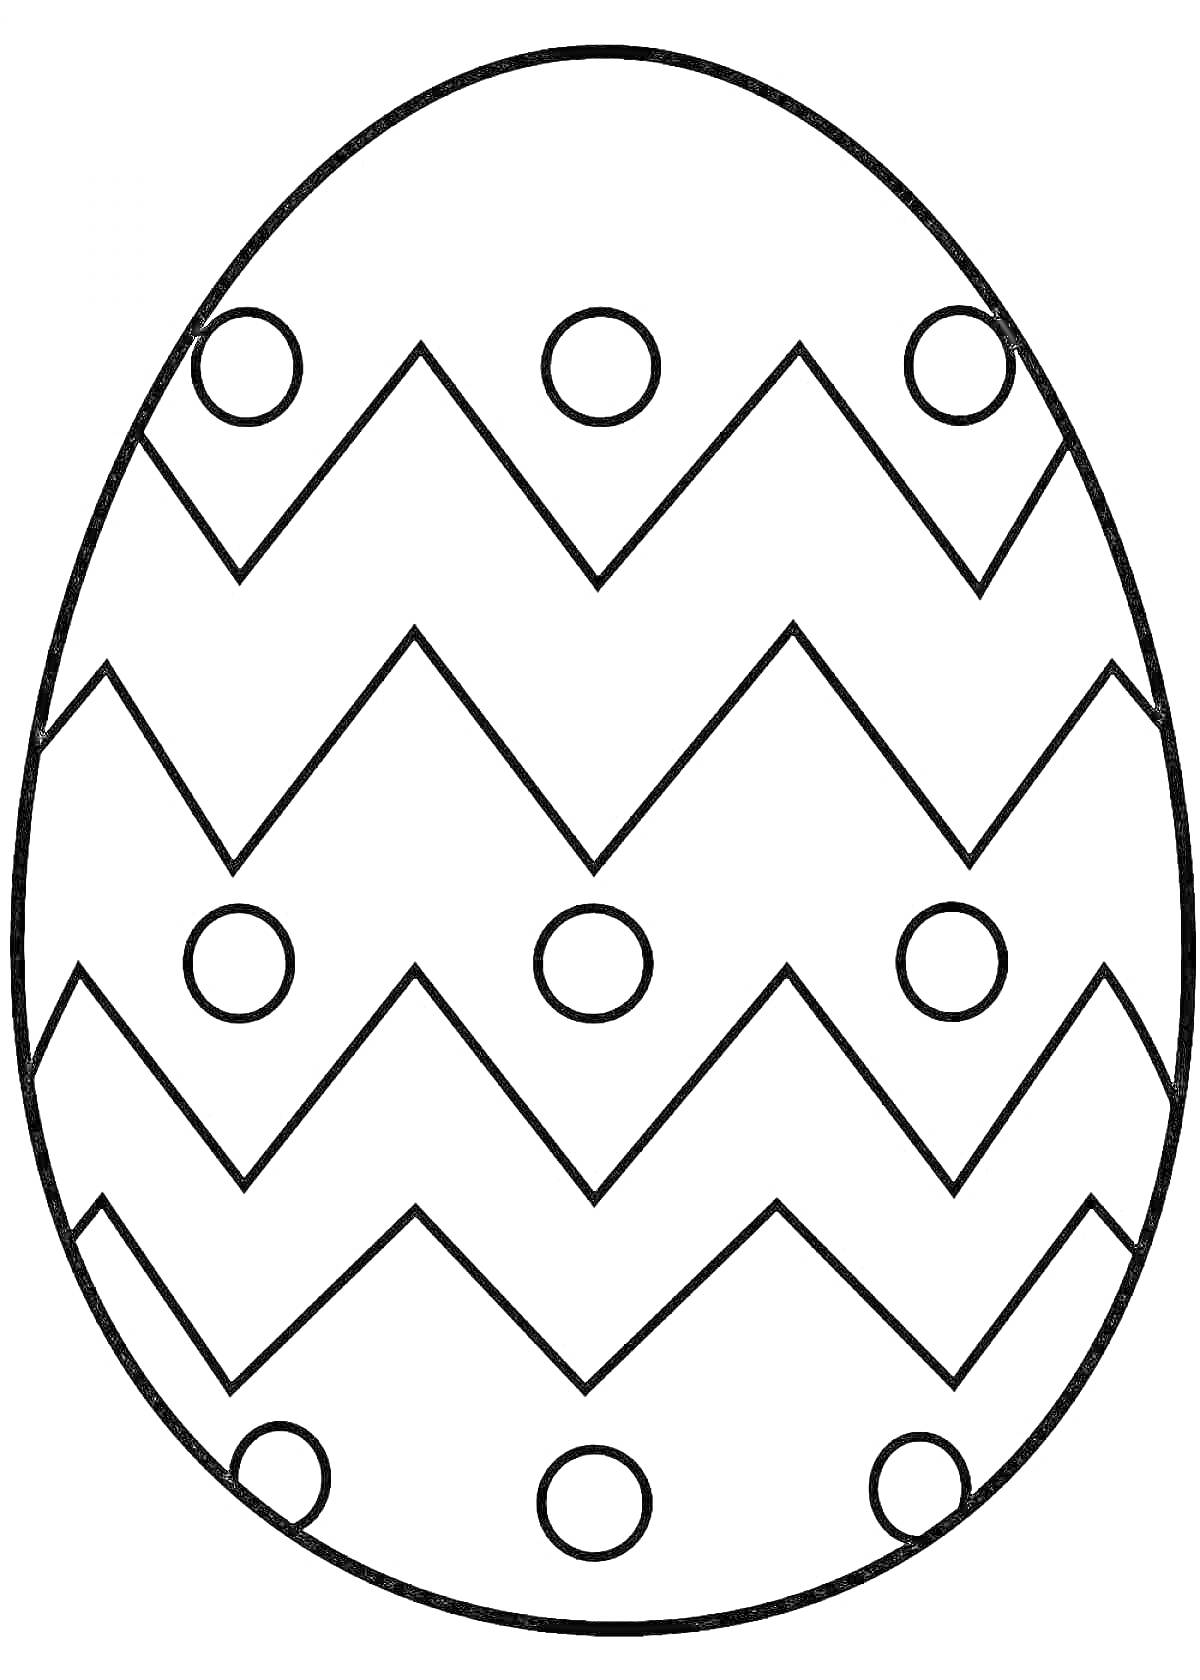 Раскраска Пасхальное яйцо с зигзагообразным узором и кругами